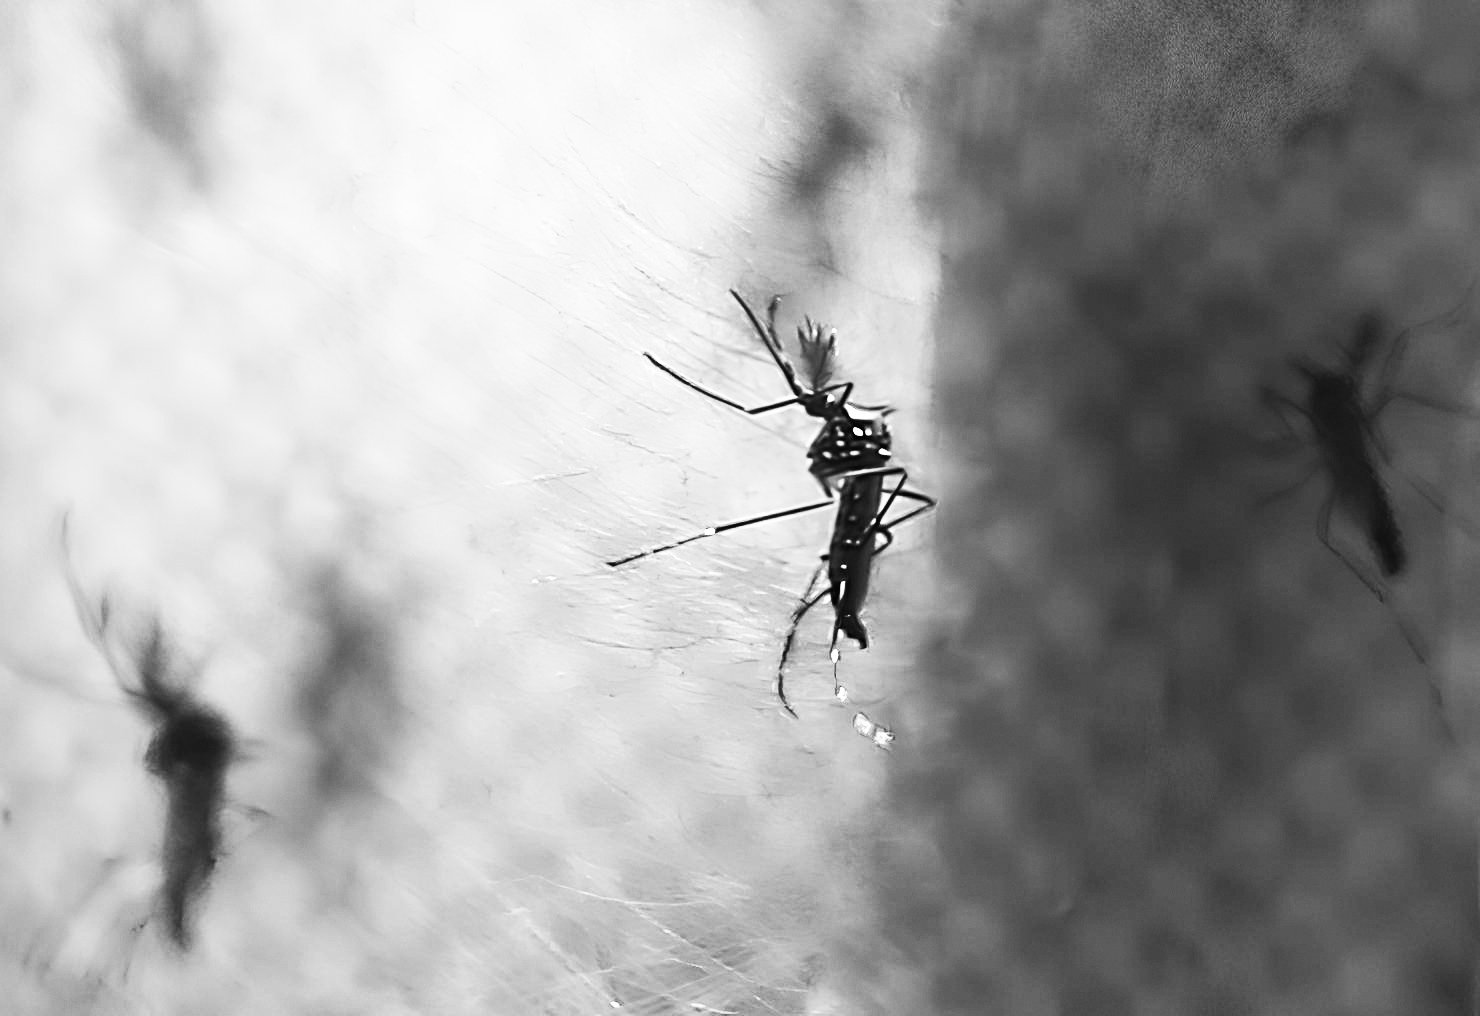 Aedes © Fabio Mota_Estadao Conteudo_EDITADA.jpg